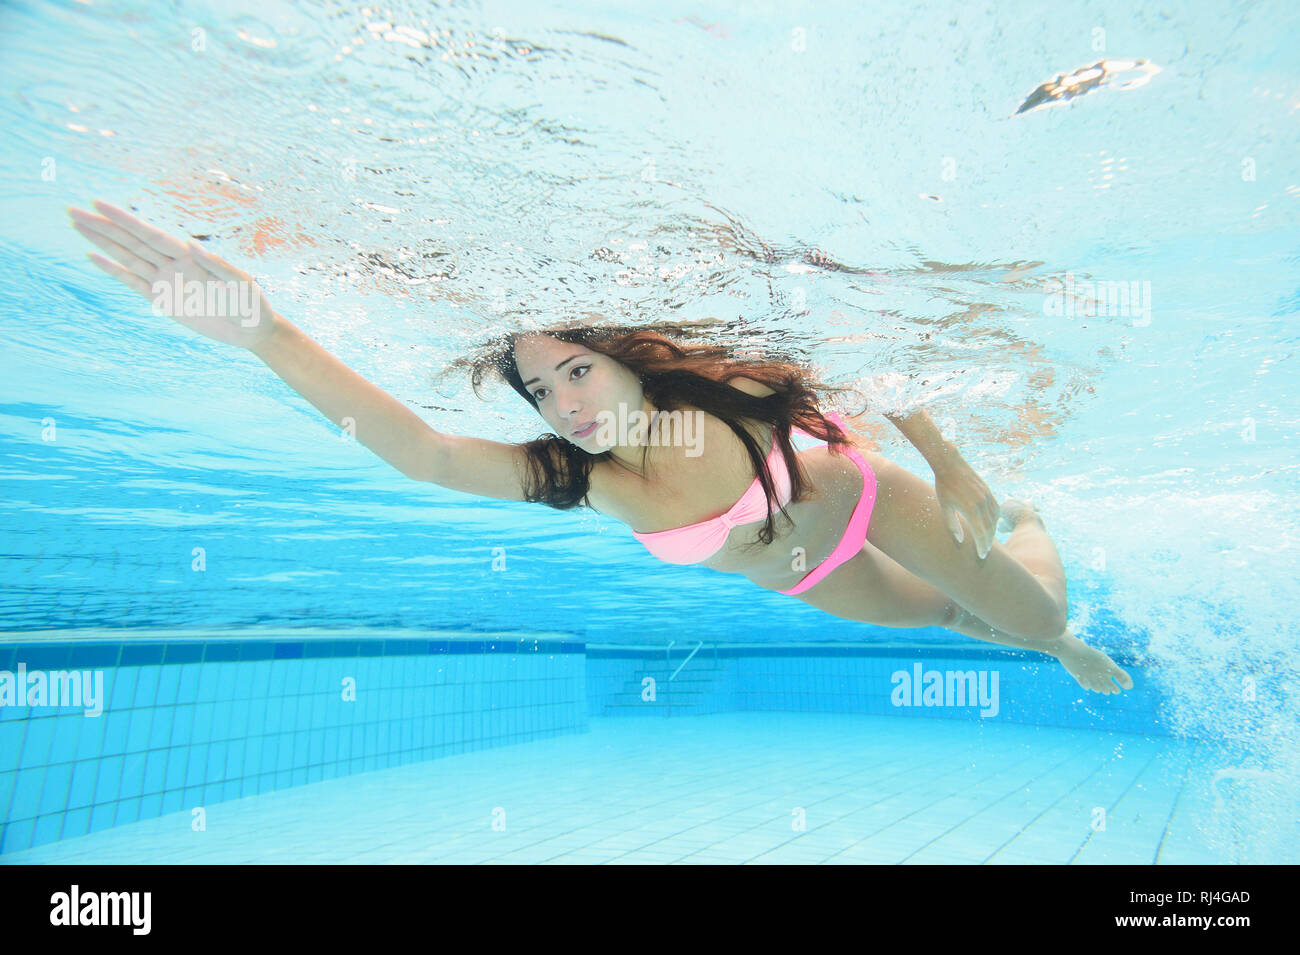 Frau, jung, Bikini, Freibad, Unterwasser, schwimmen Stock Photo